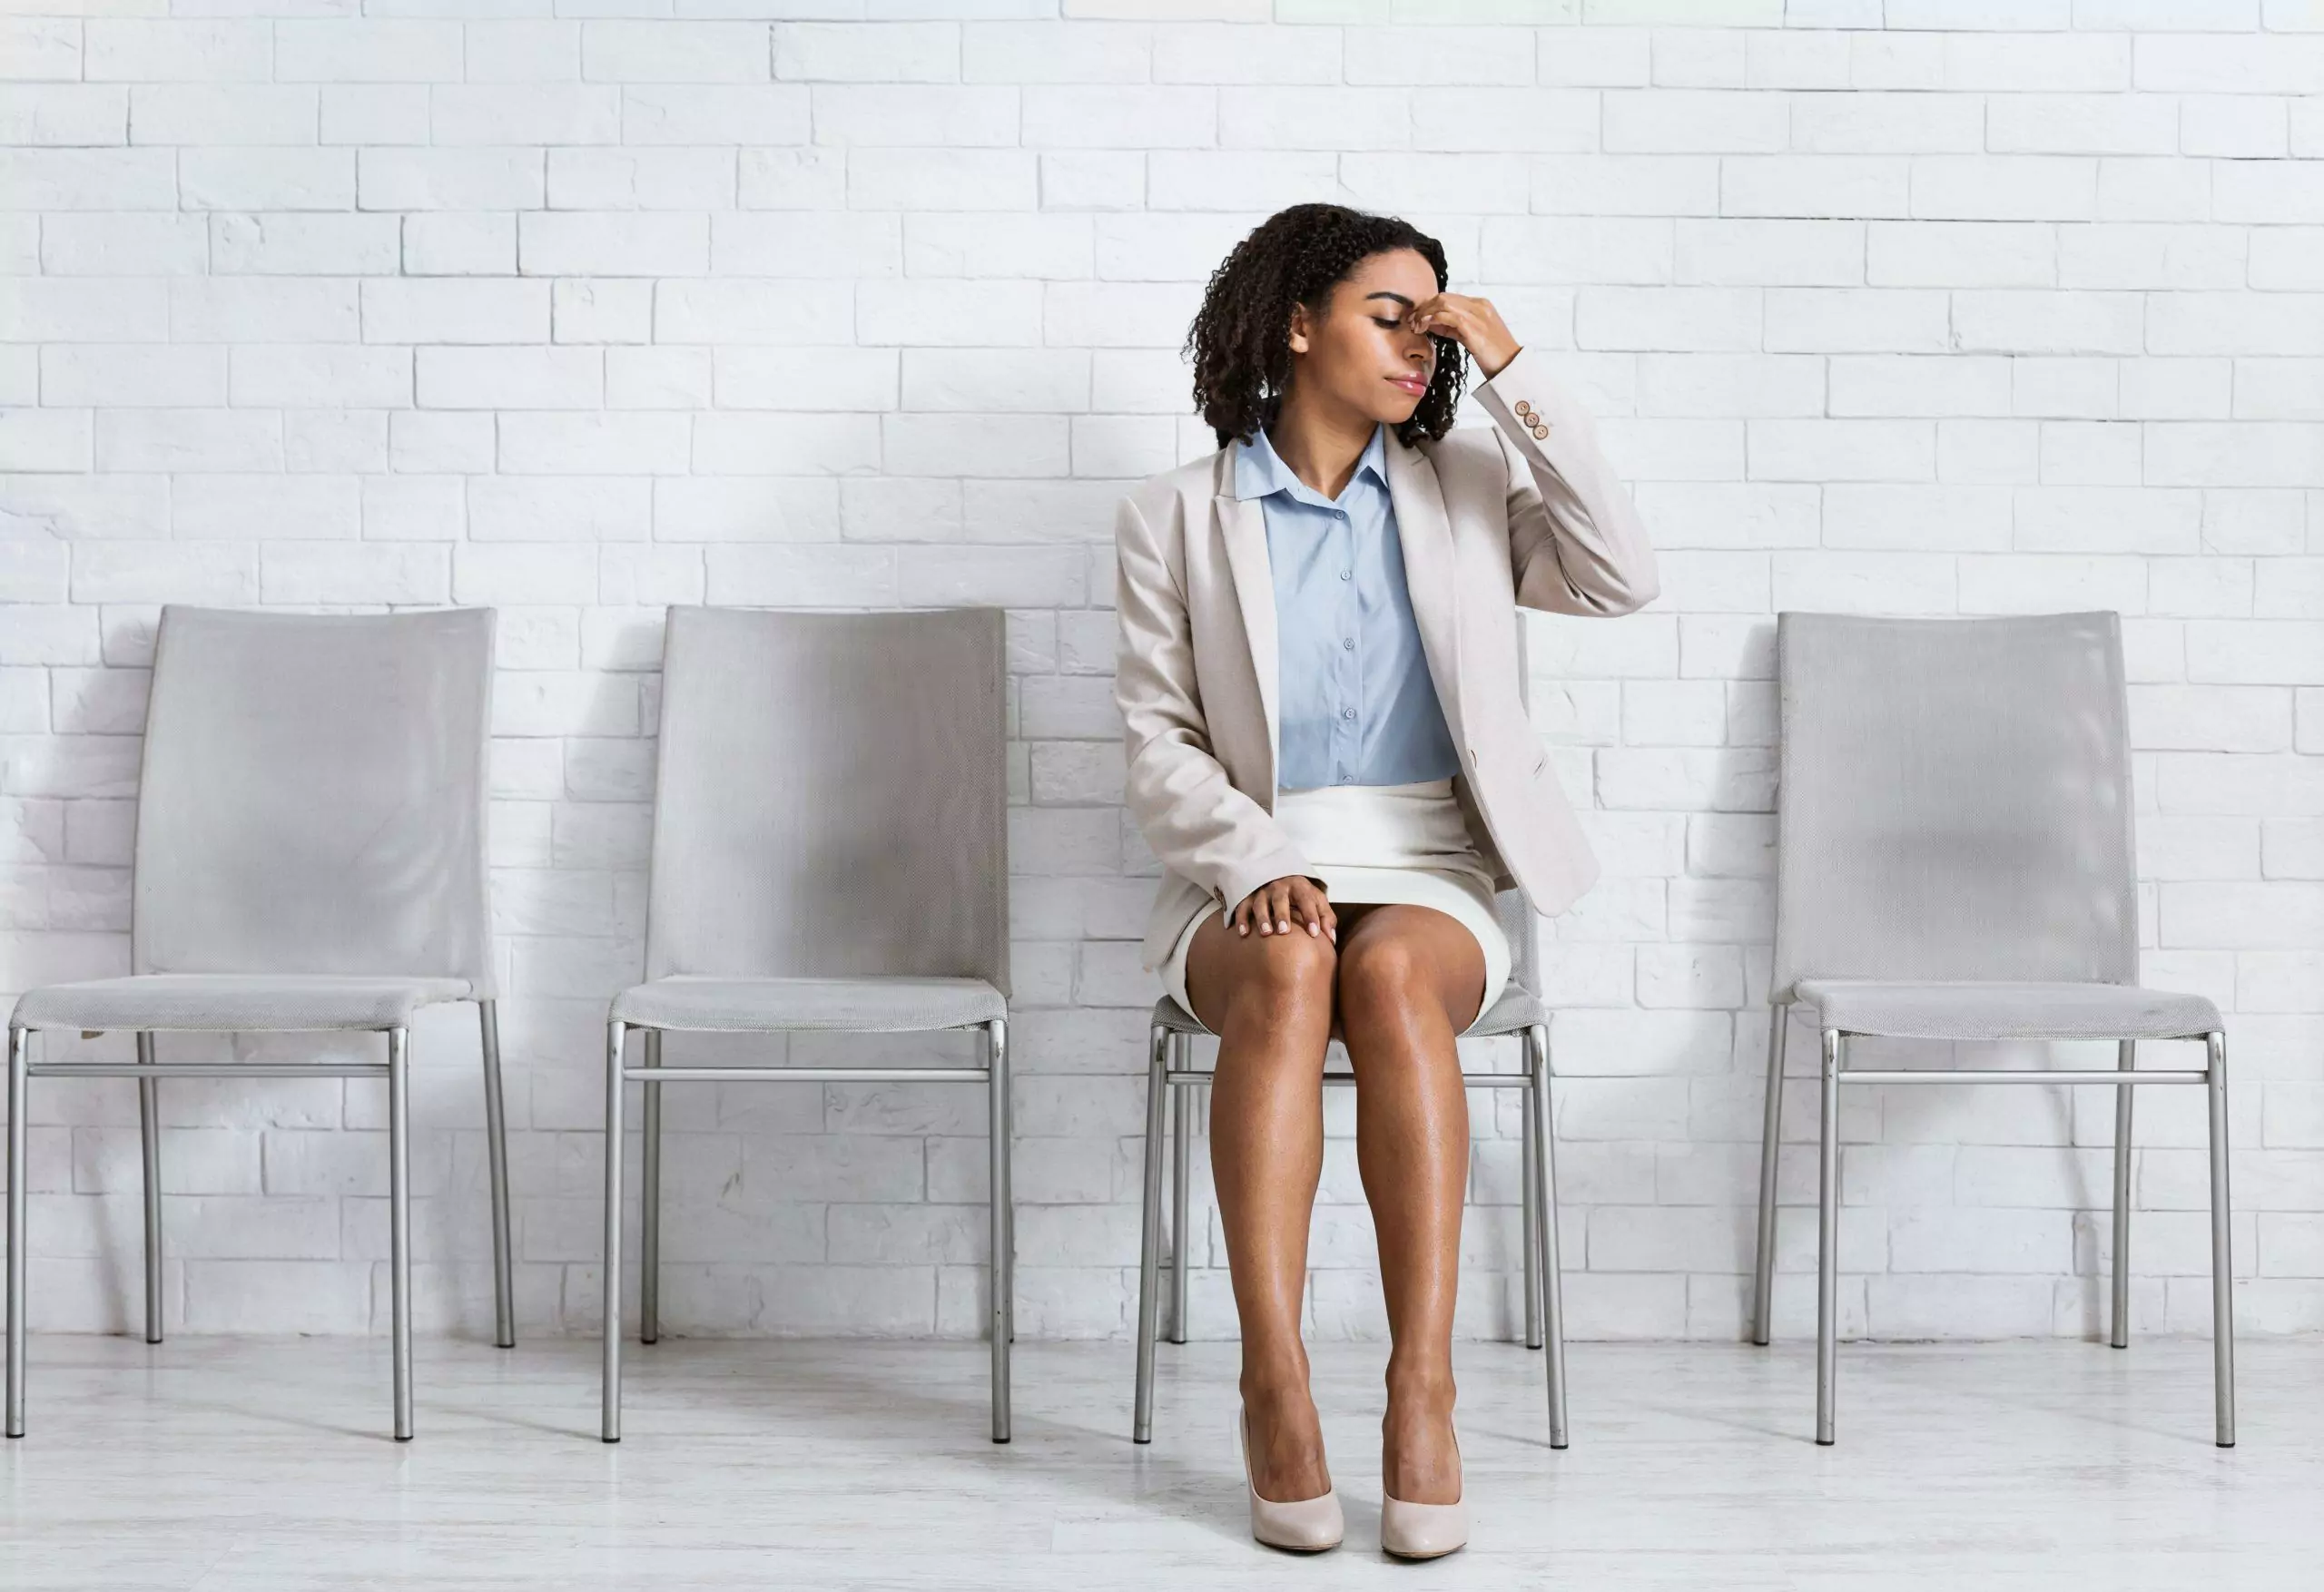 visuel d'une femme en train de réfléchir assise dans une salle d'attente vide